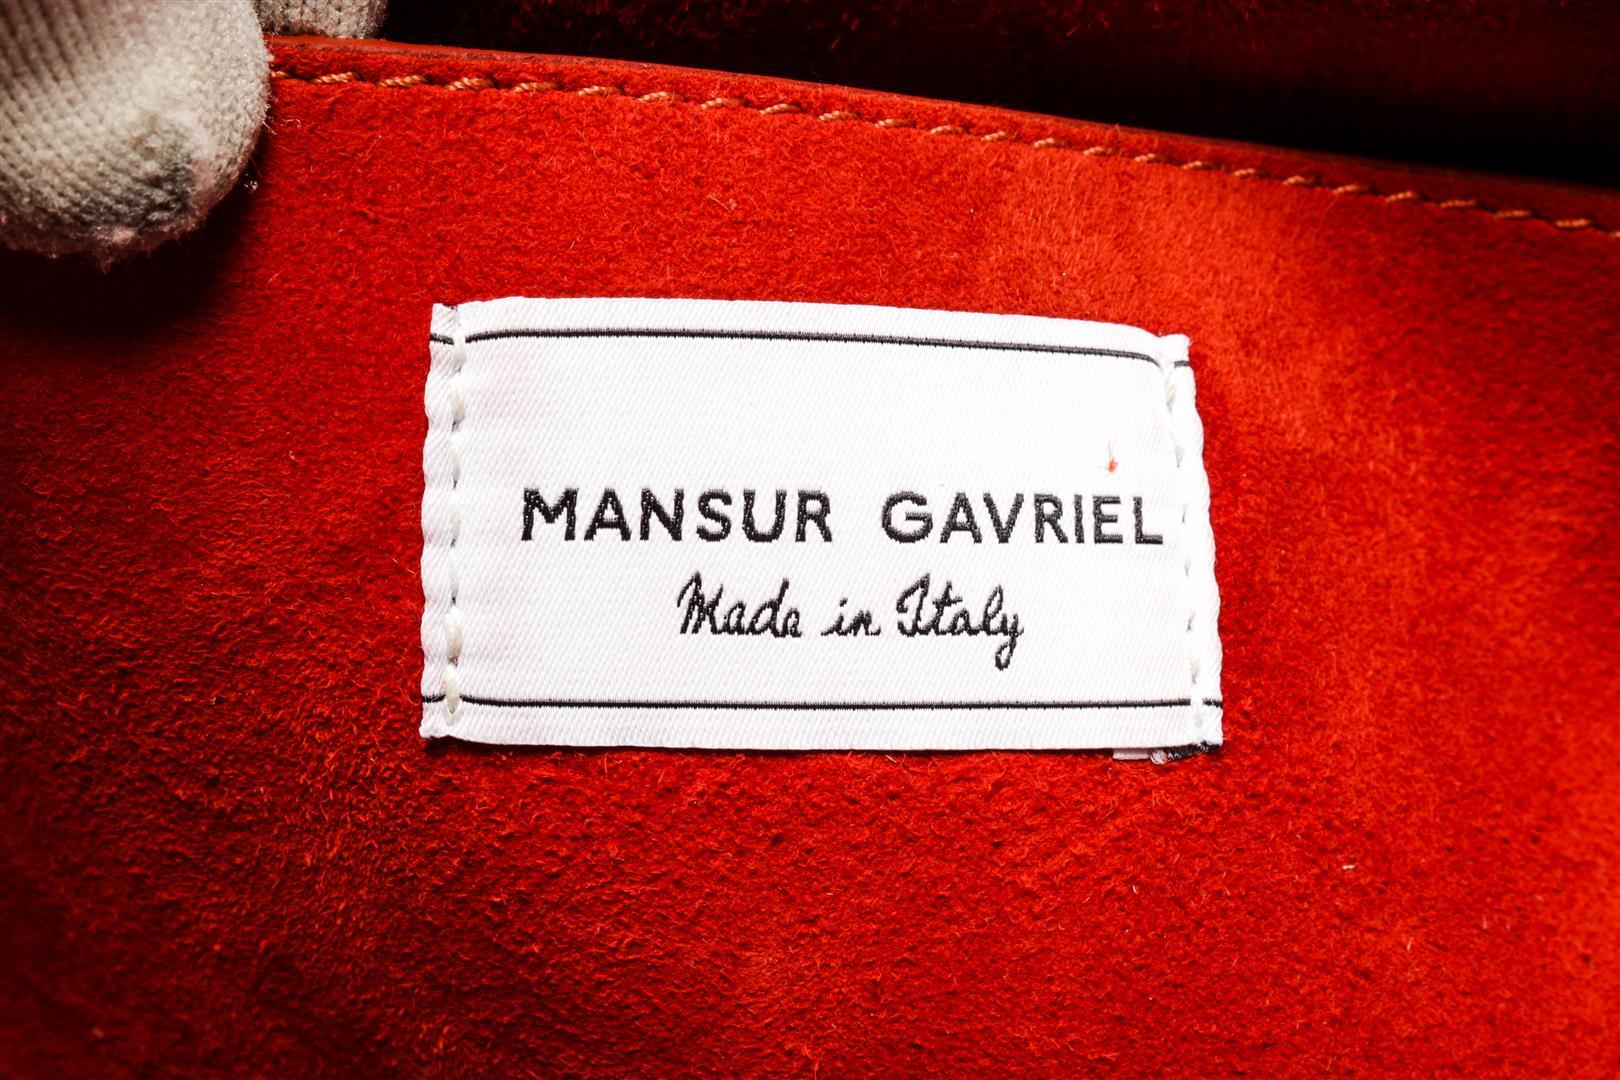 Mansur Gavriel Red Suede Soft Elegant Handbag